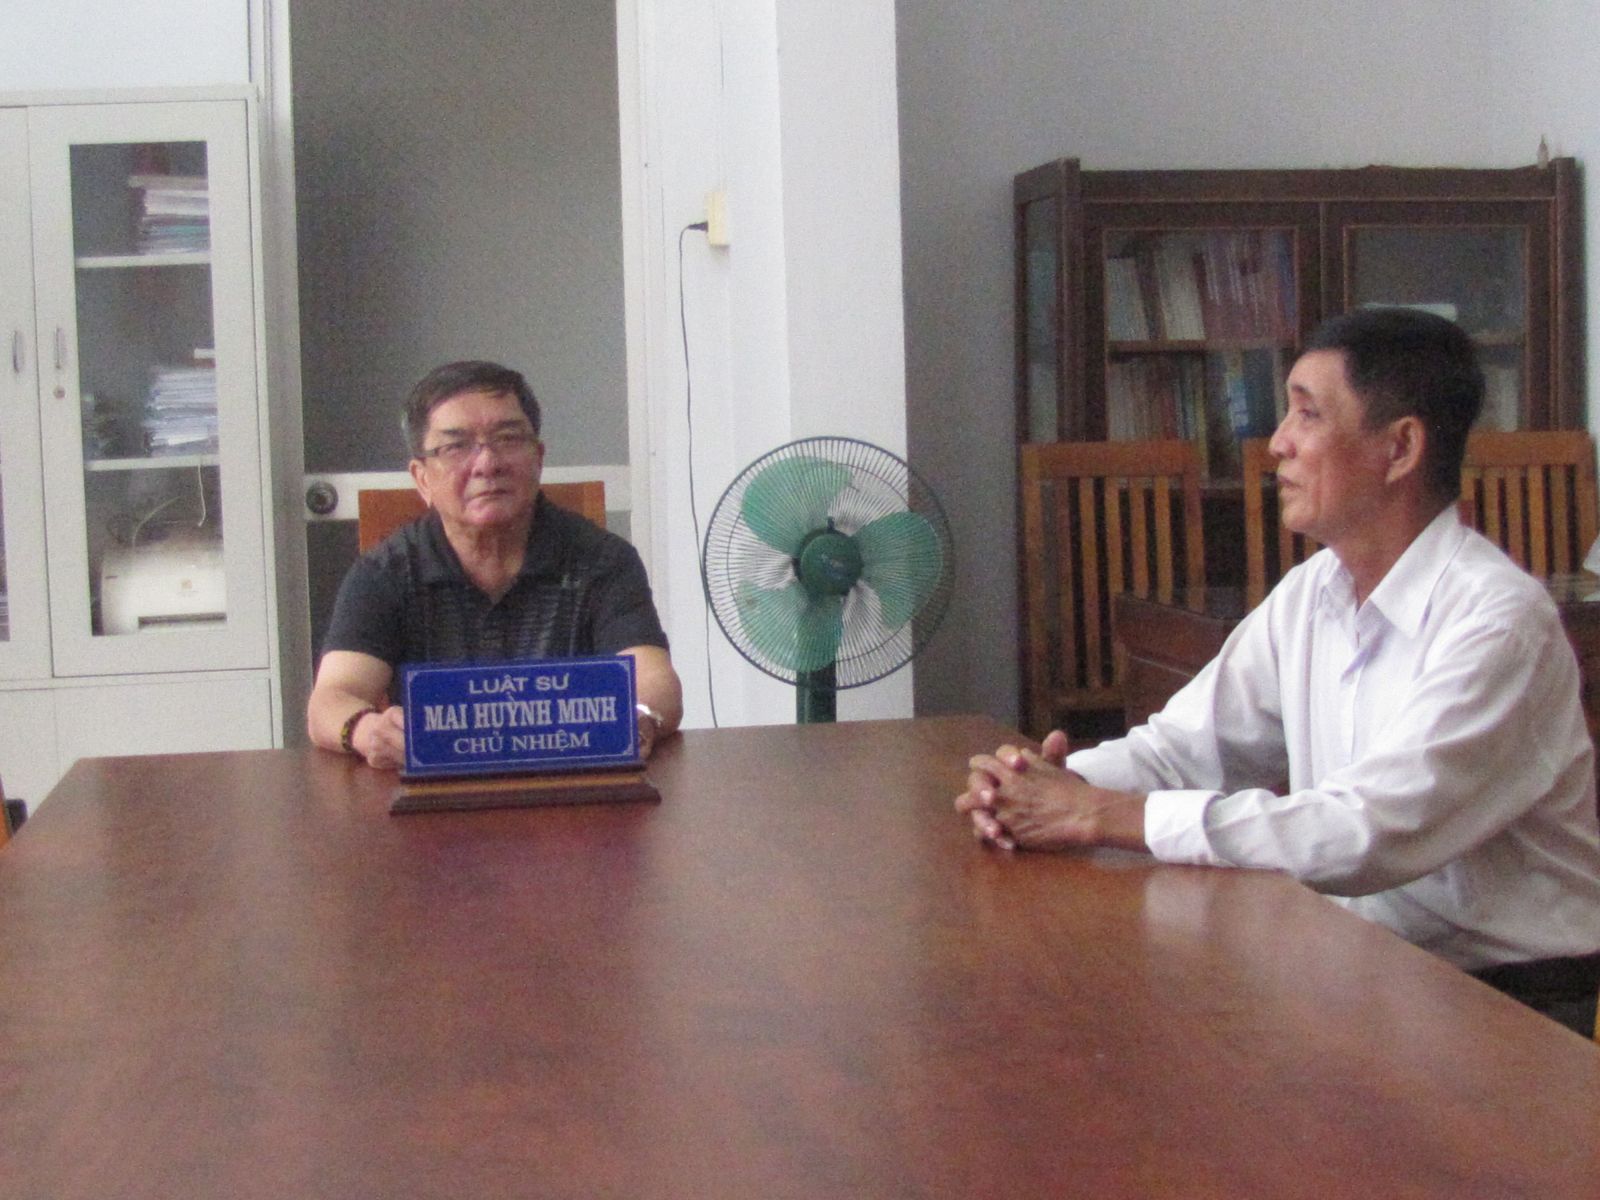 Chủ nhiệm Đoàn Luật sư Long An - luật sư Mai Huỳnh Minh (bên trái) cùng luật sư trong đoàn thường xuyên trợ giúp pháp lý cho khách hàng tại trụ sở